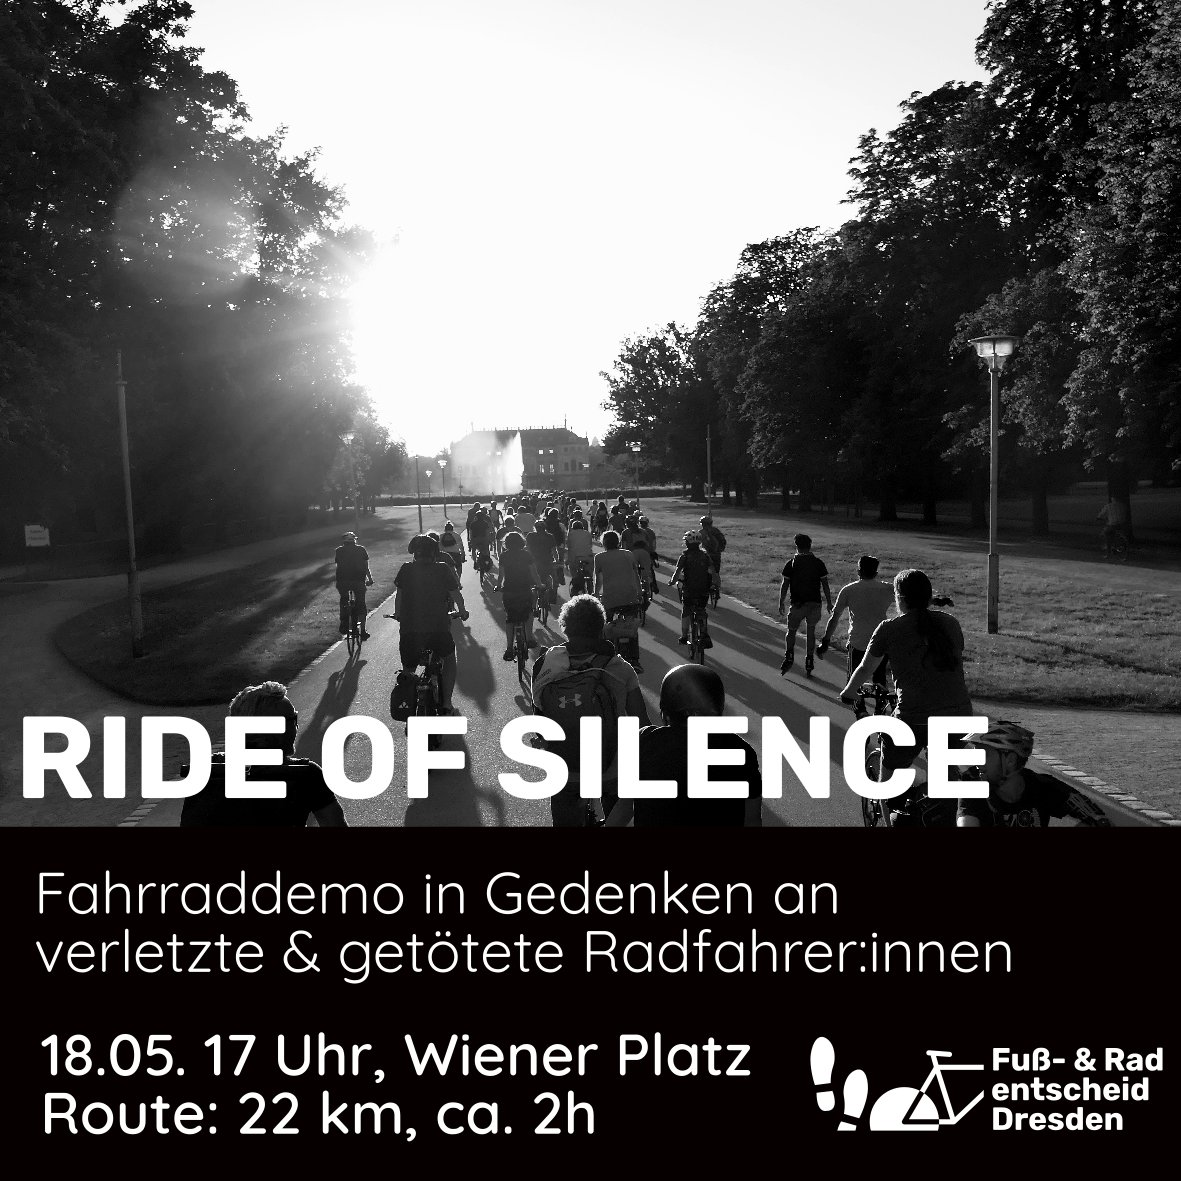 Morgen veranstalten wir eine Fahrradtour um all den getöteten und verletzten Radfahrer:innen zu gedenken und ein Zeichen für eine sichere Verkehrspolitik für alle zu setzen. #VisionZero ist unser Ziel. Mehr Infos findet ihr im Thread ⬇️ #RideOfSilence